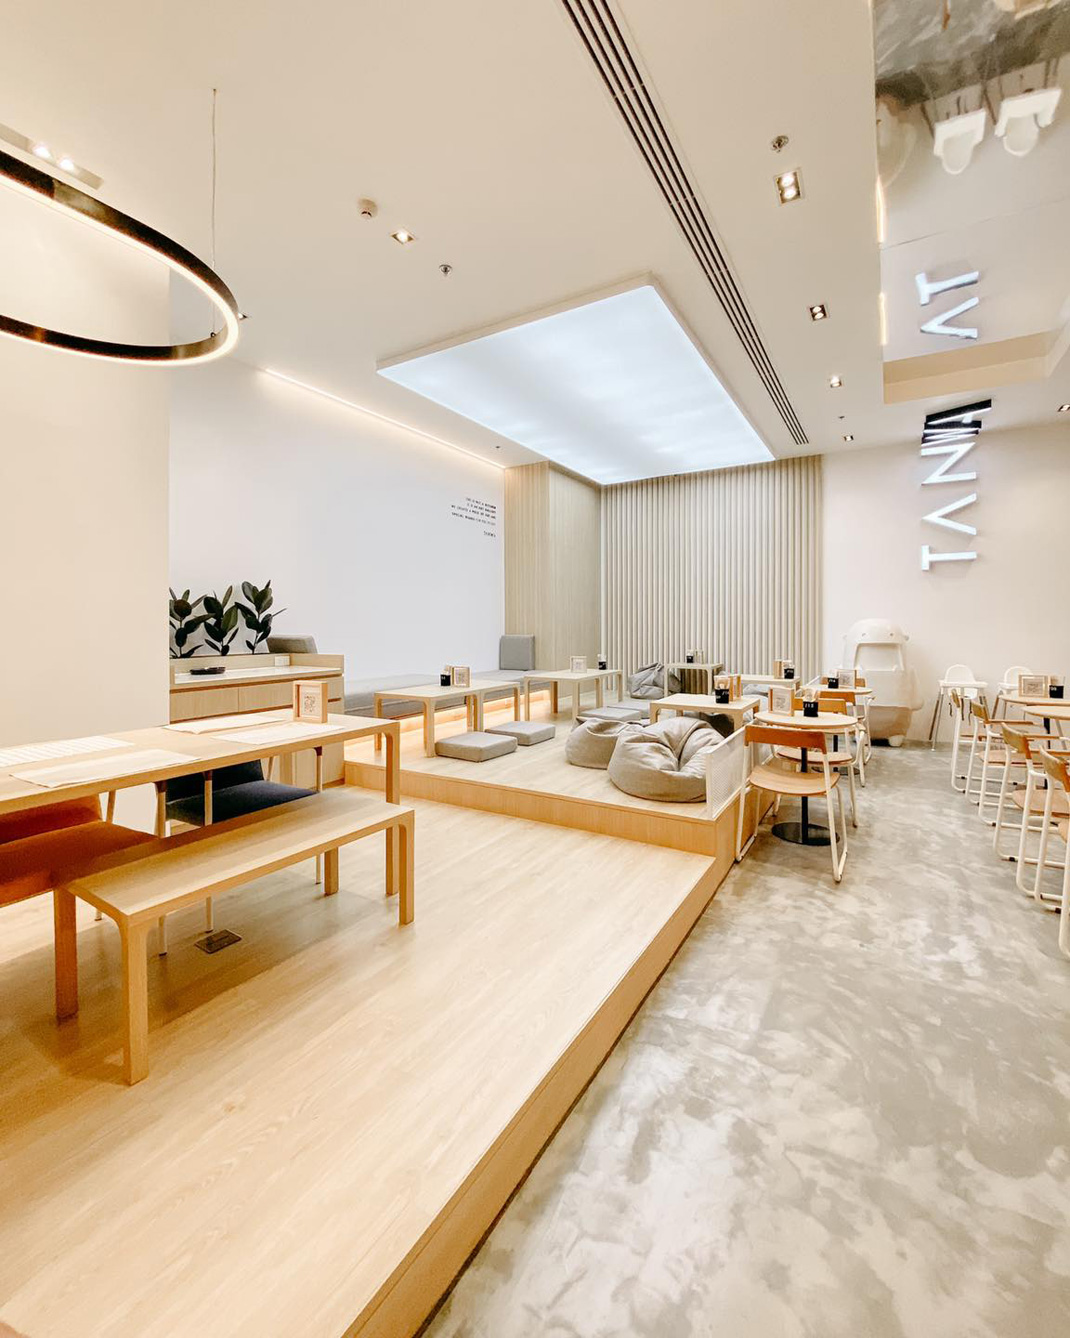 创意融合菜餐厅 泰国 曼谷 融合菜 字母设计 木材 logo设计 vi设计 空间设计